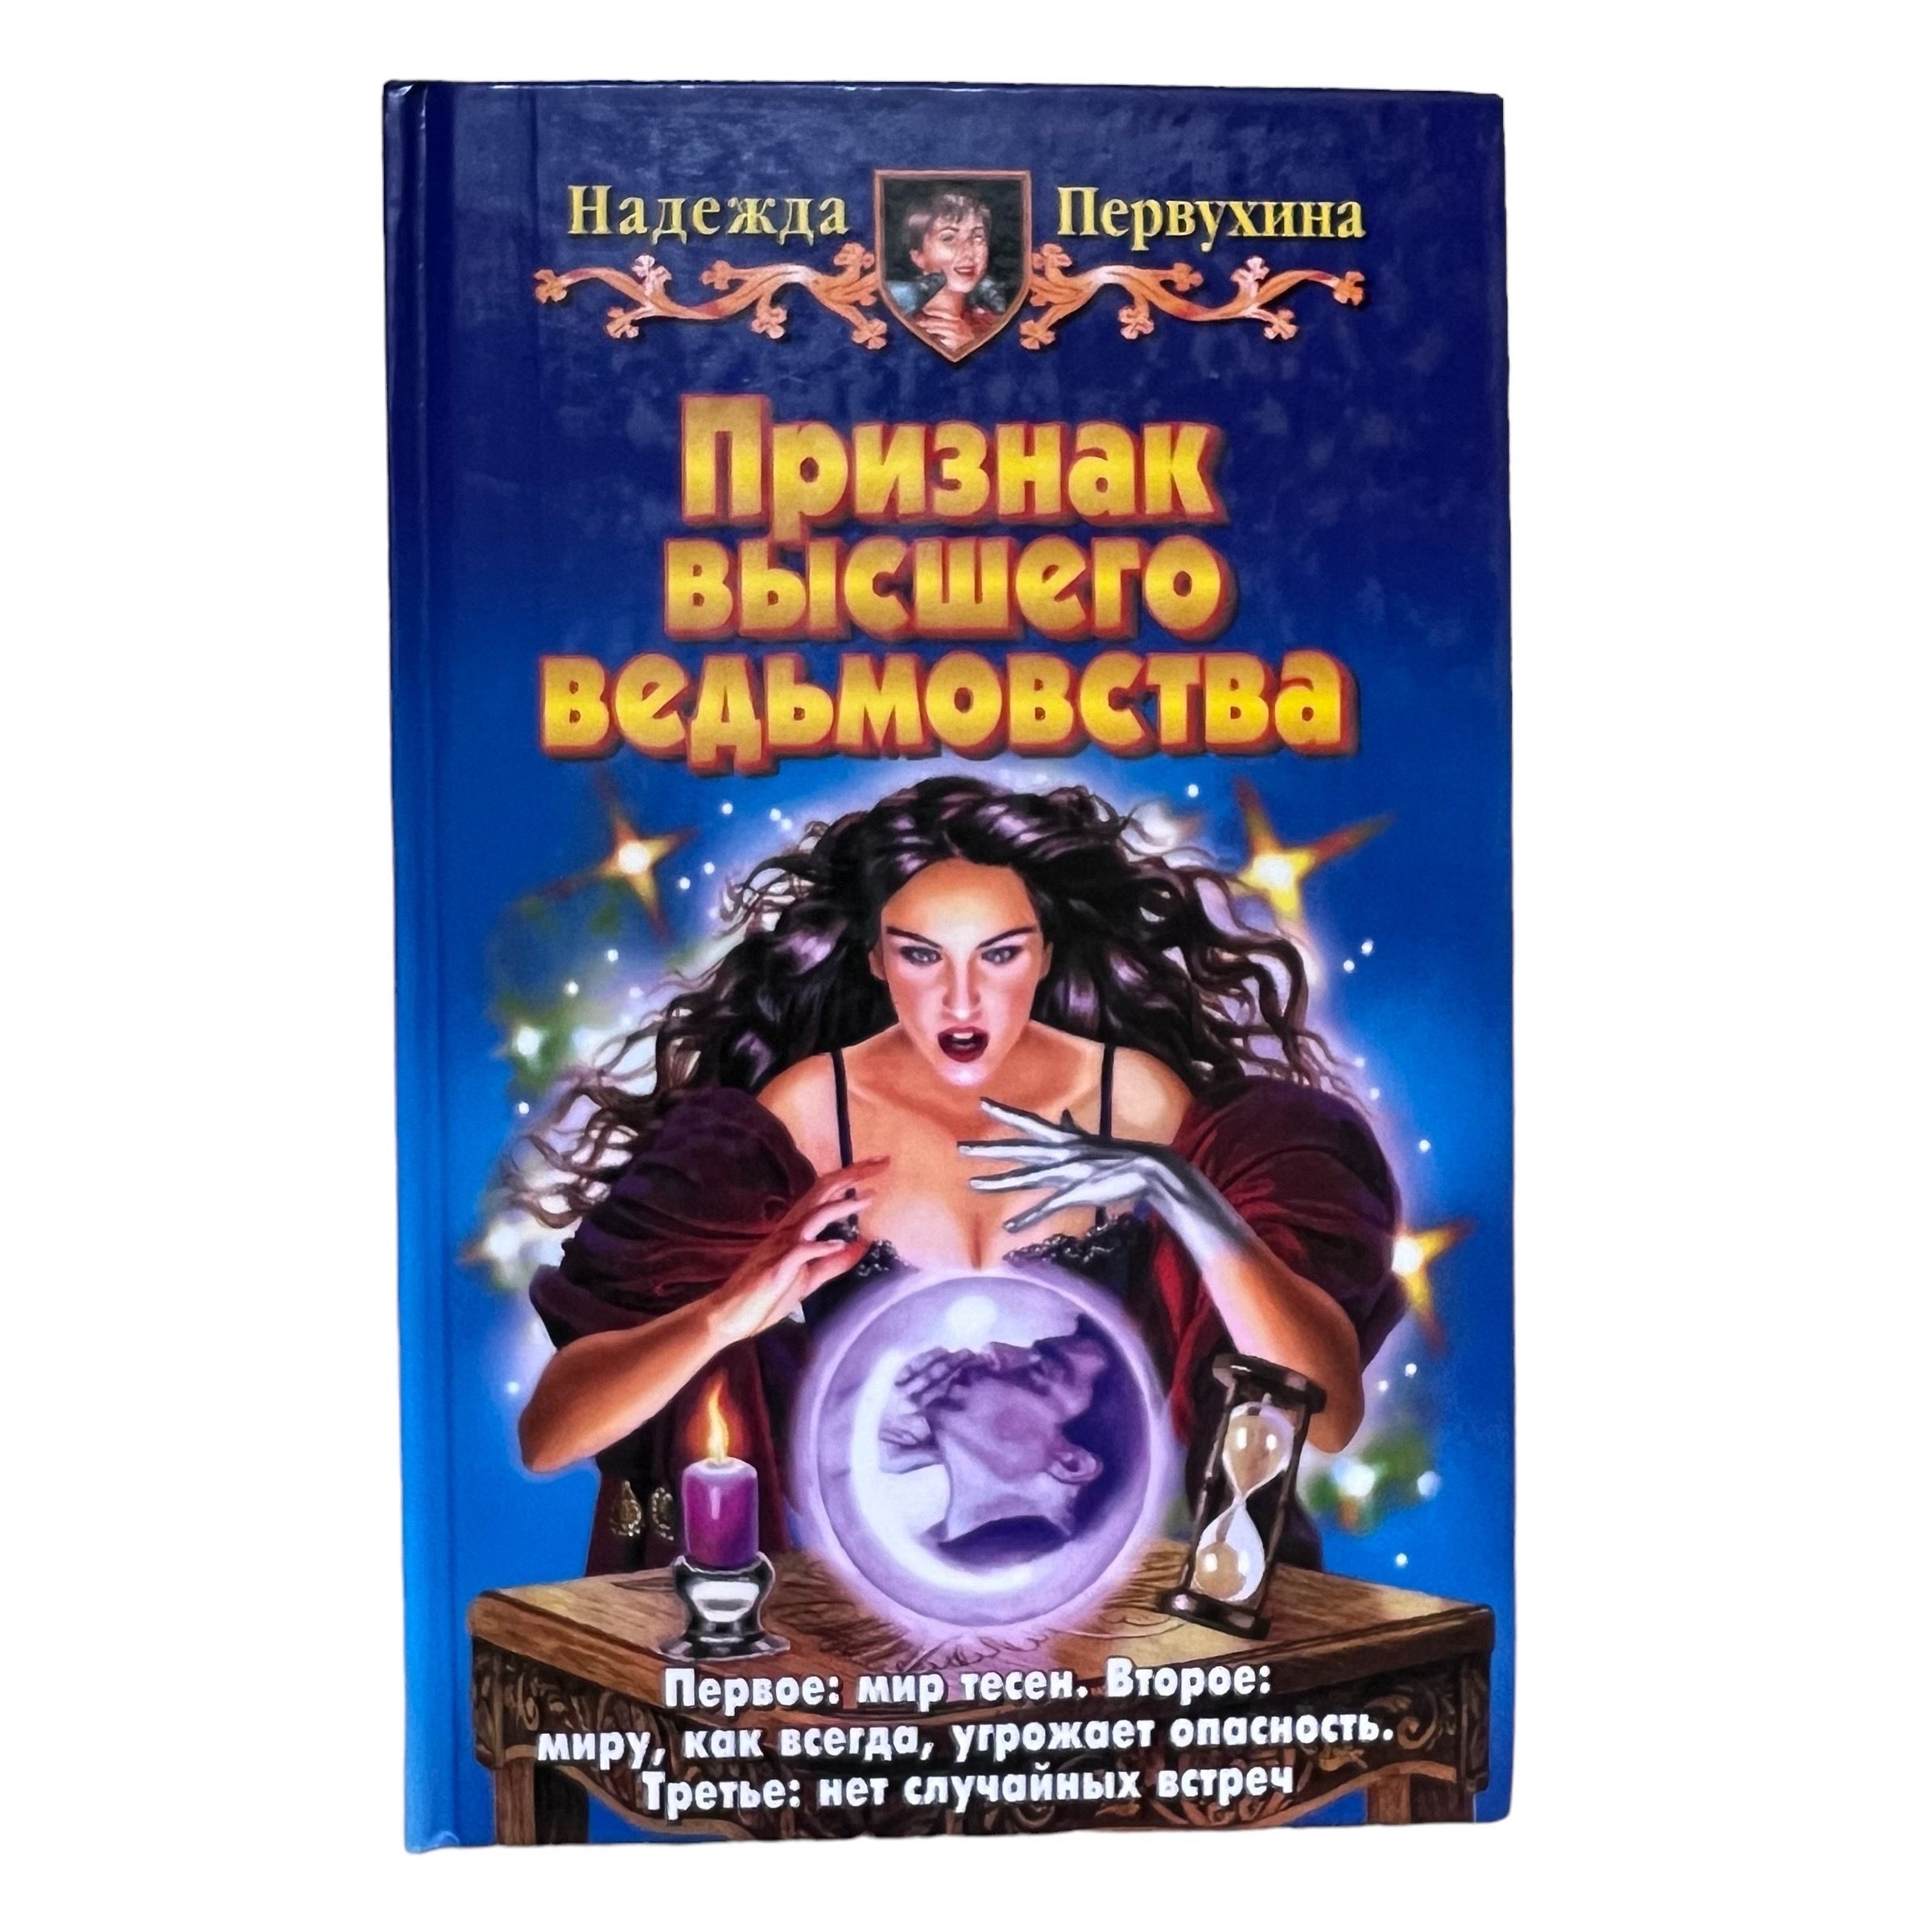 Купить в Новосибирске книгу Петербург для детей Первухина. Читать первухина ученик 3